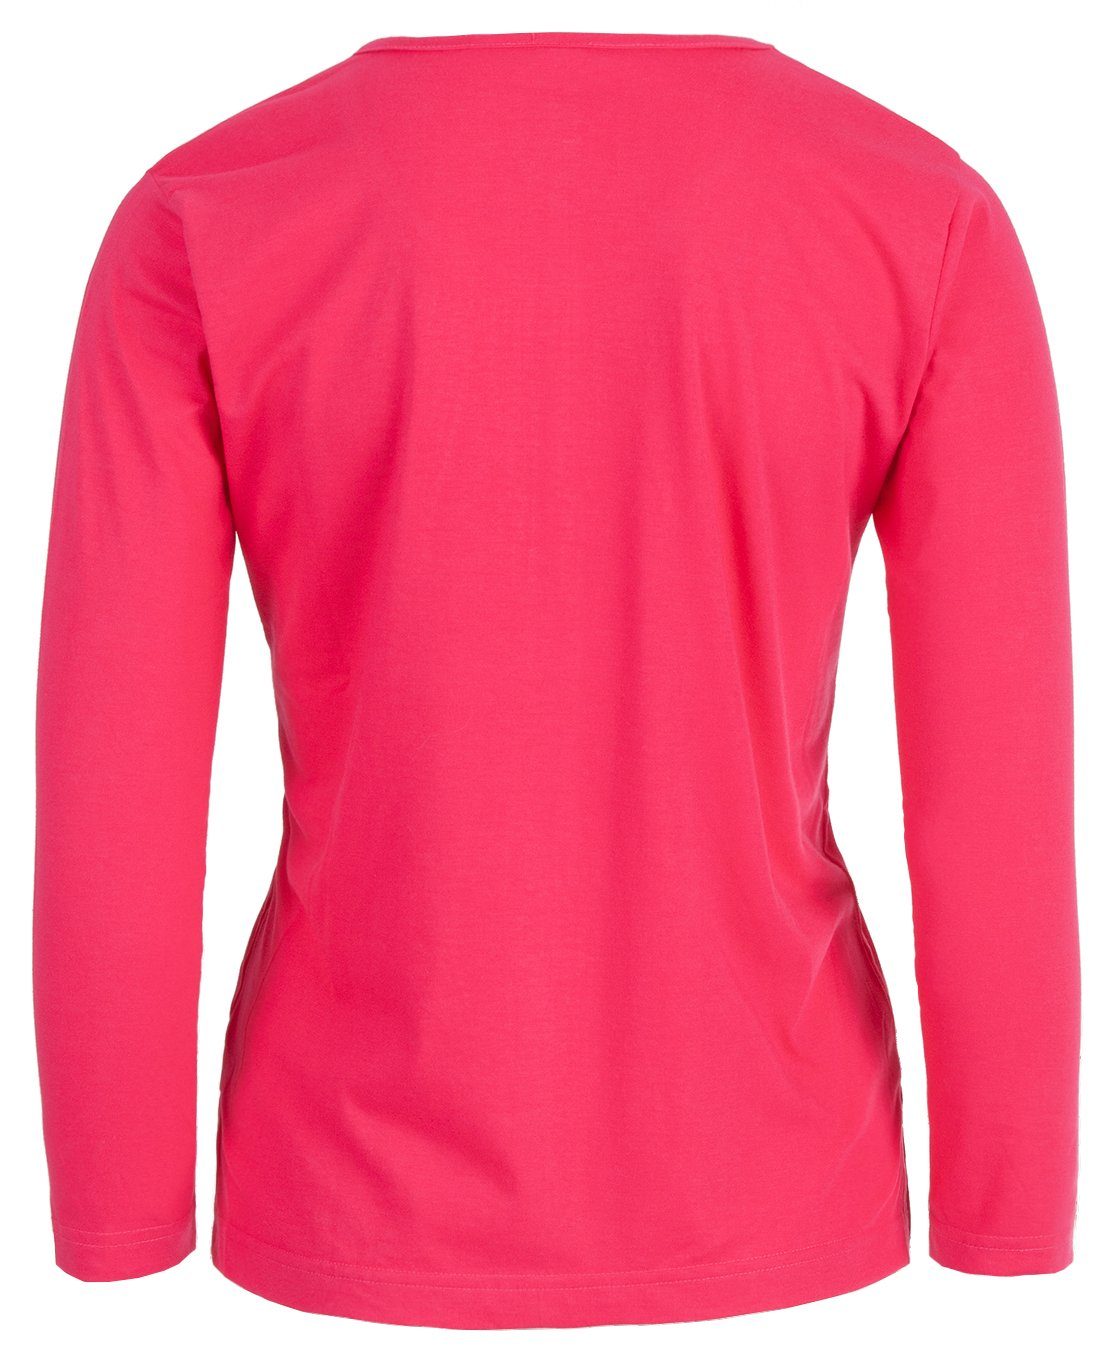 Stein zeitlos - T-Shirt Rundhals pink zeitlos Damen Applikation Stickerei Langarmshirt